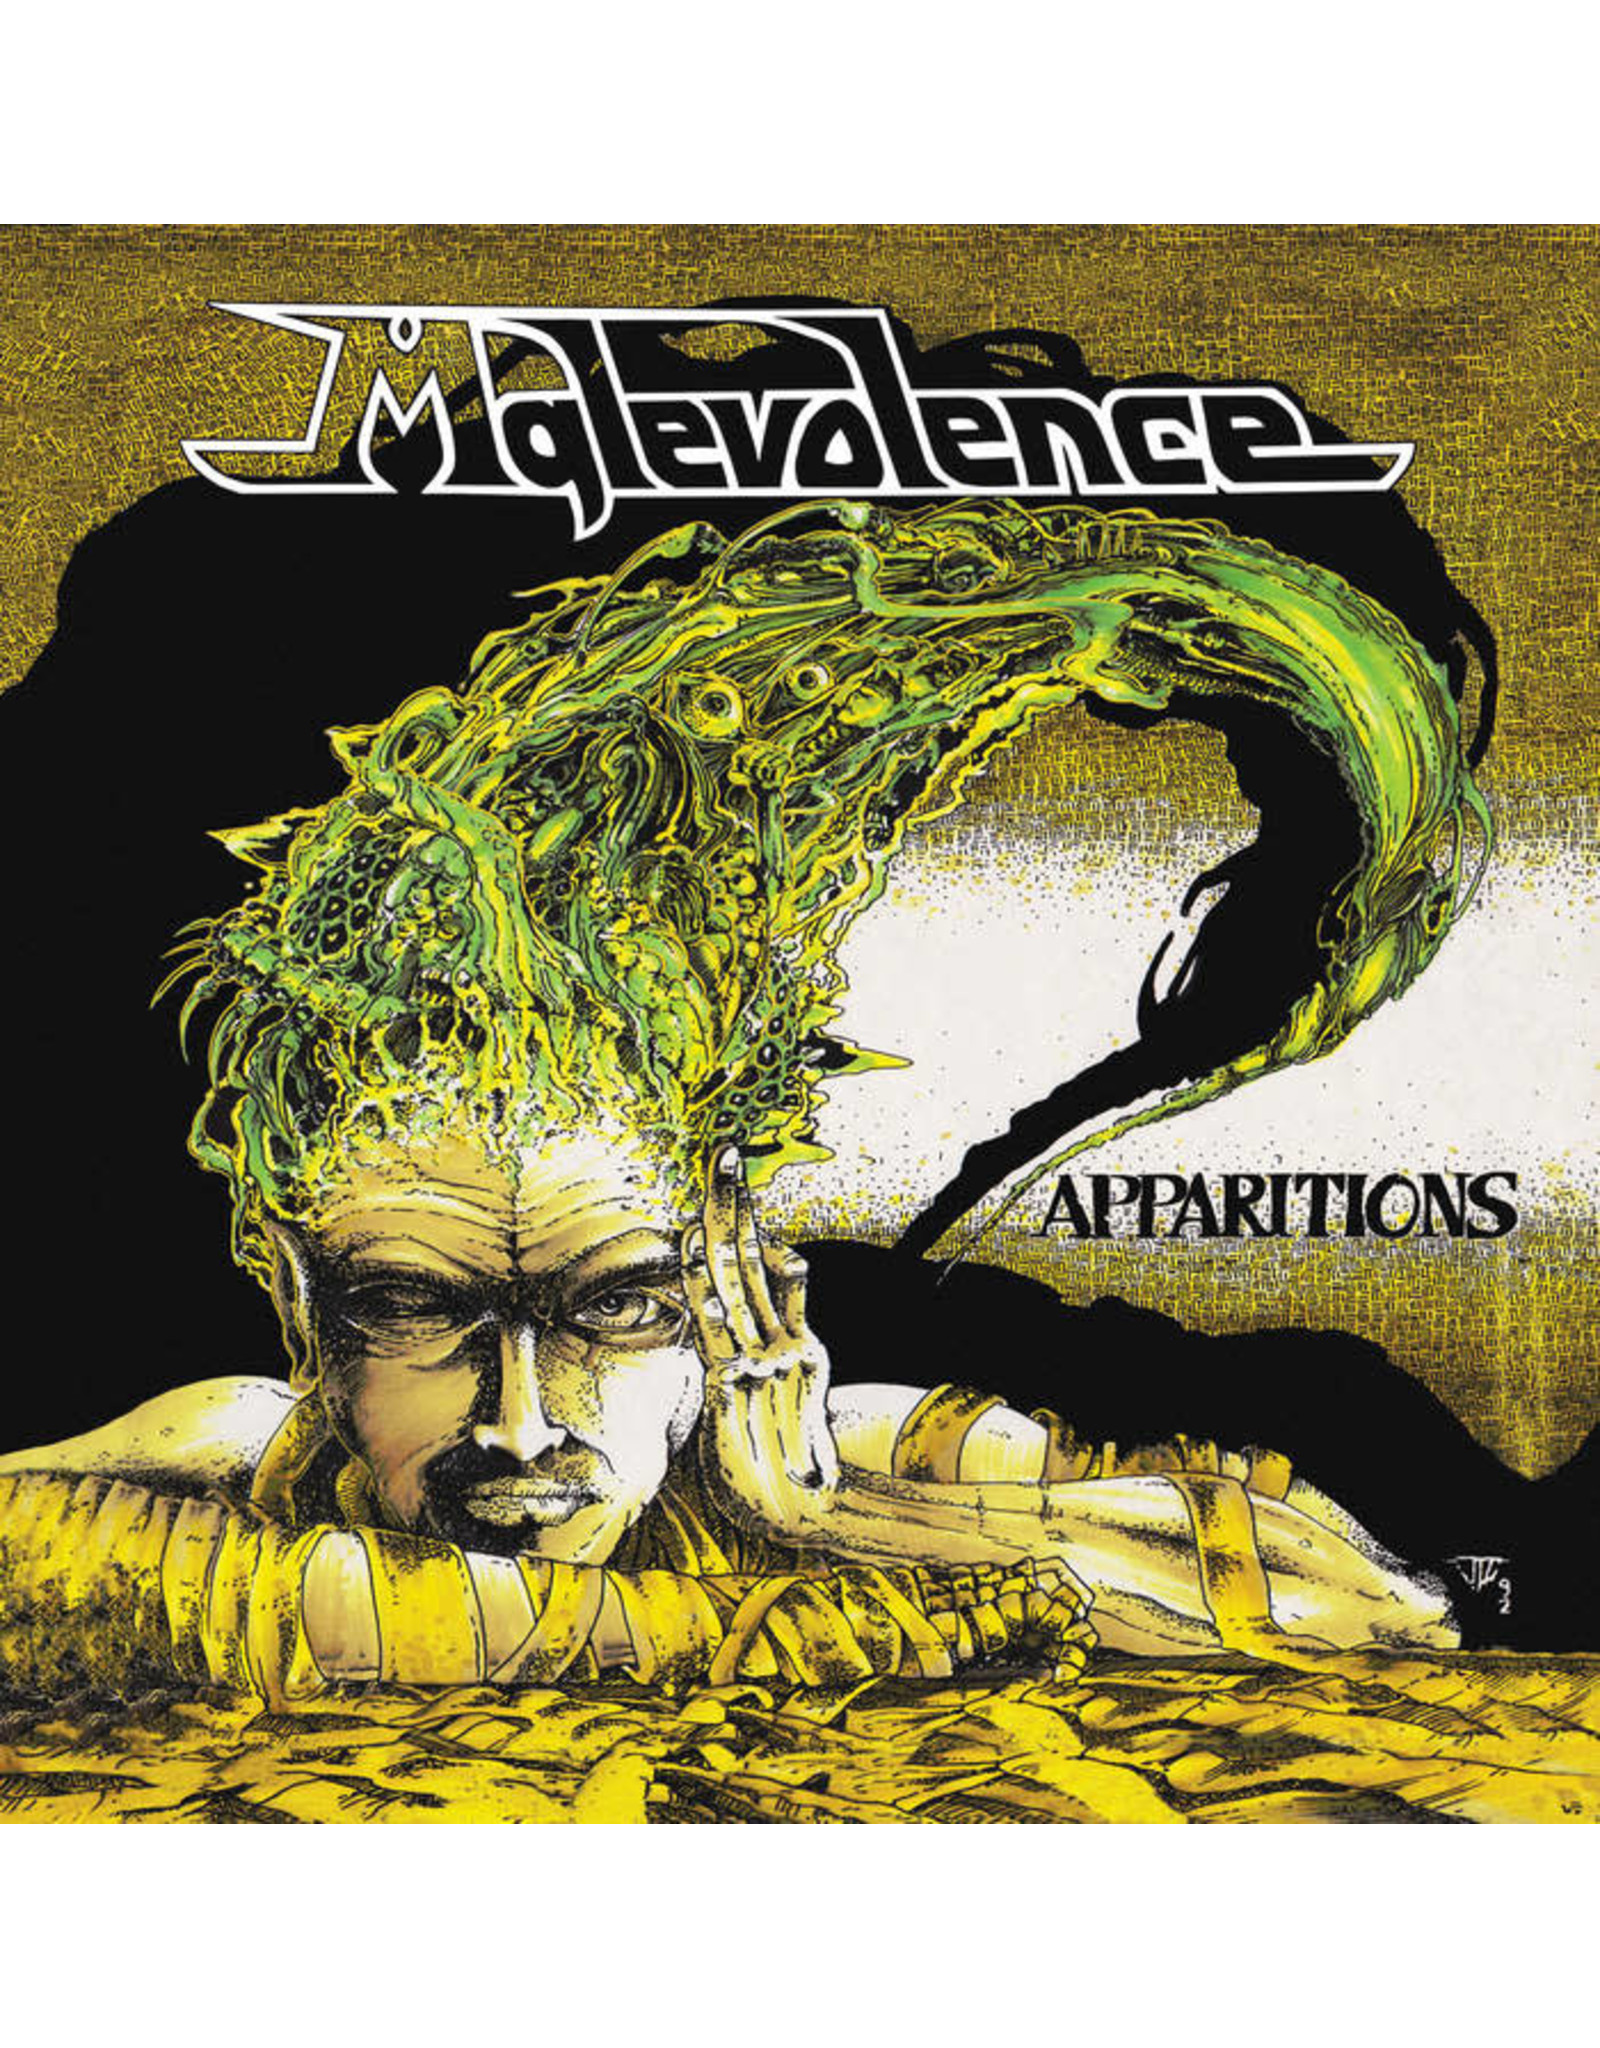 Supreme Echo Malevolence: Apparitions LP